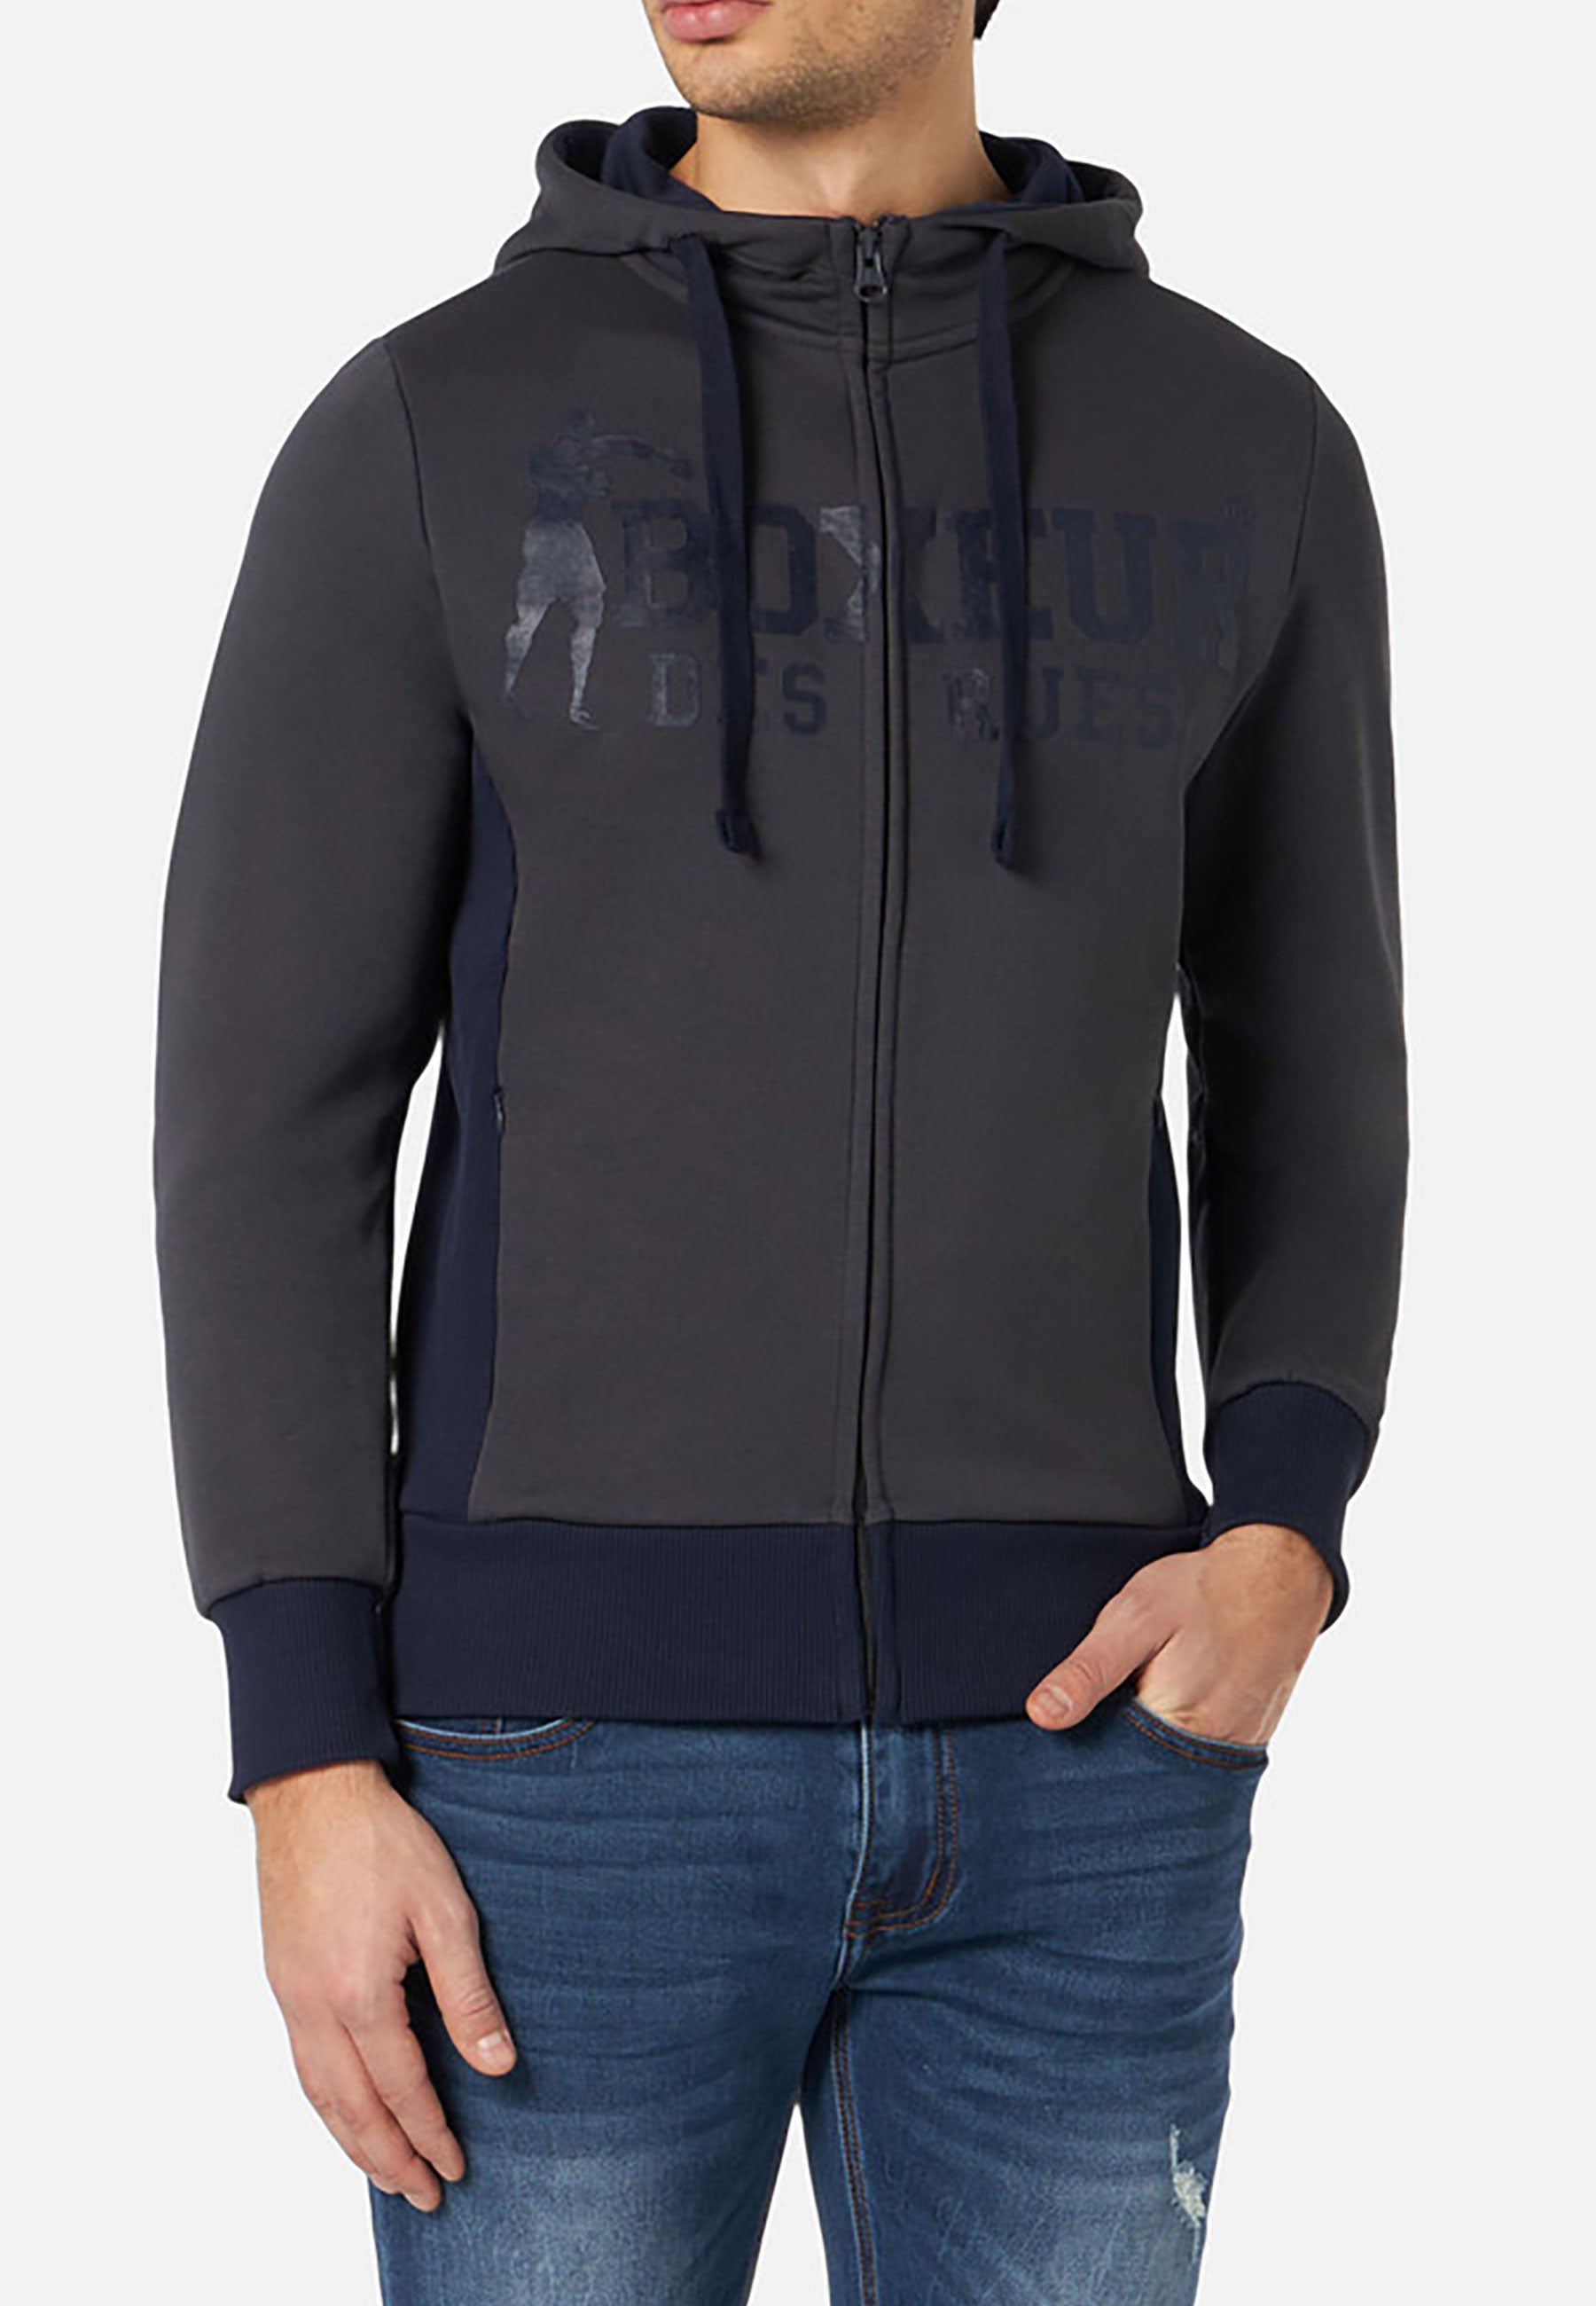 Hooded Full Zip Sweatshirt in Anthracite-Navy Sweatjacken Boxeur des Rues   